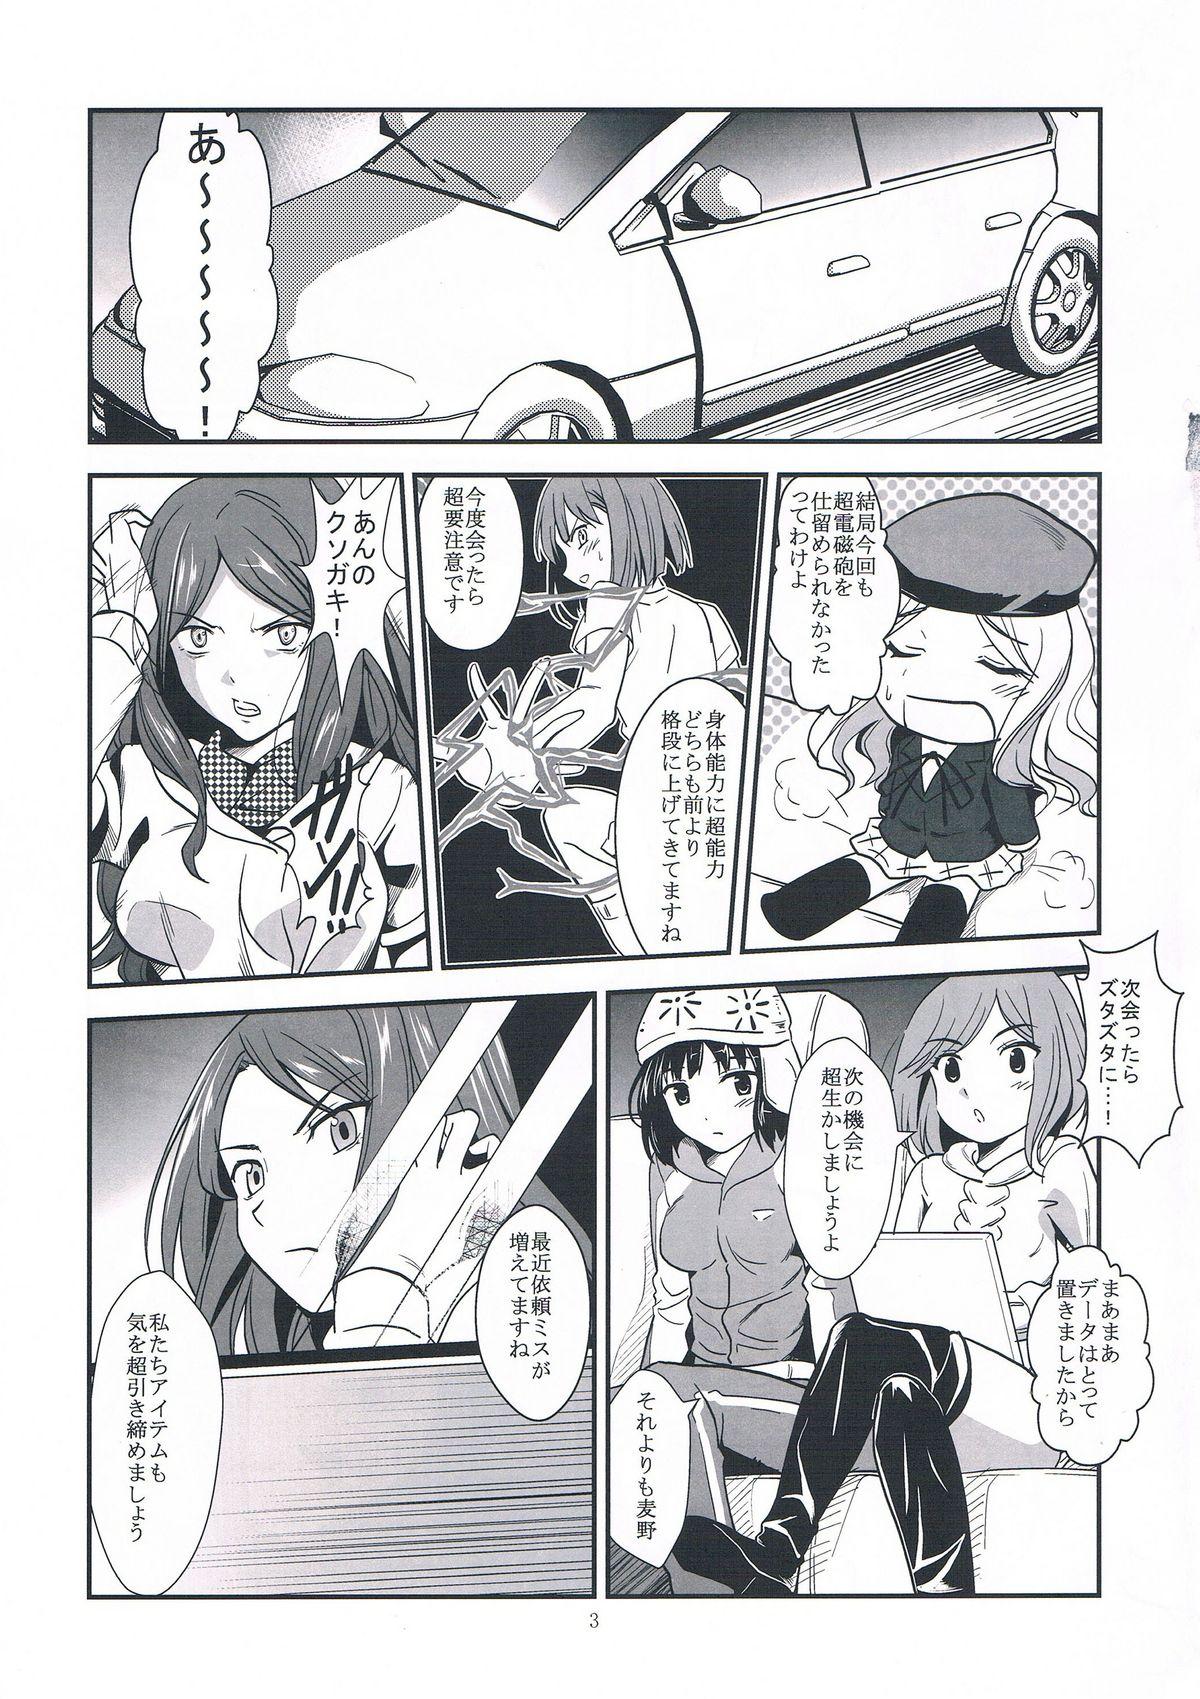 Gordita Melt Melt Melt - Toaru kagaku no railgun Toaru majutsu no index Chicks - Page 7